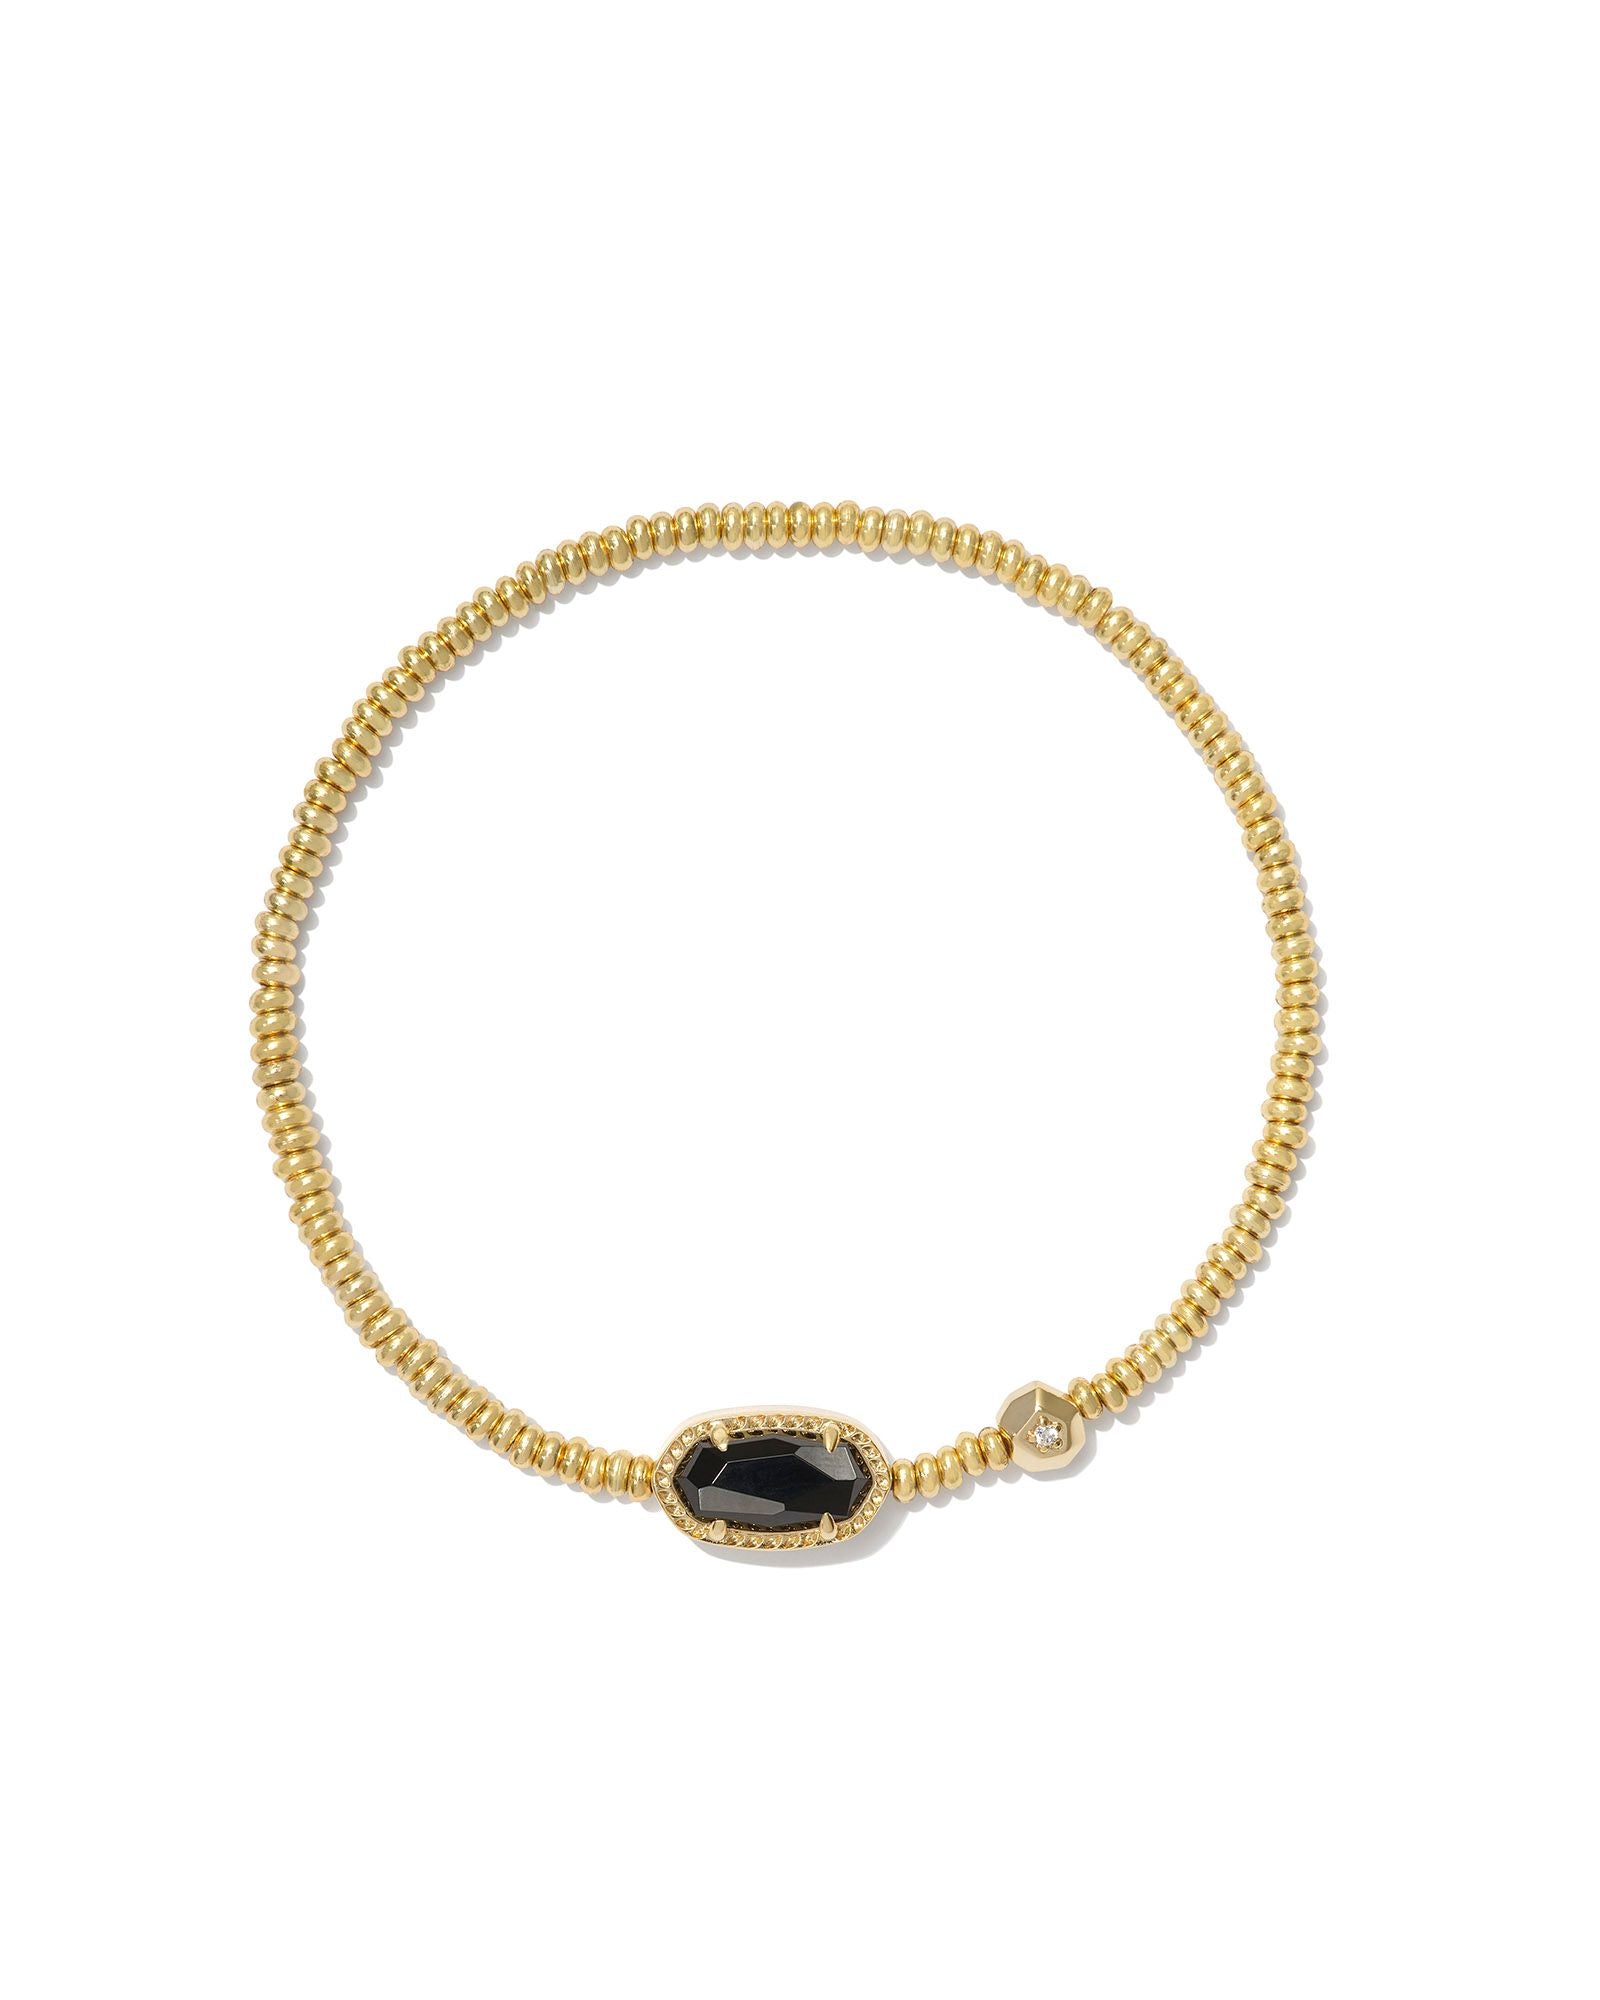 Grayson Gold Stretch Bracelet Black Agate